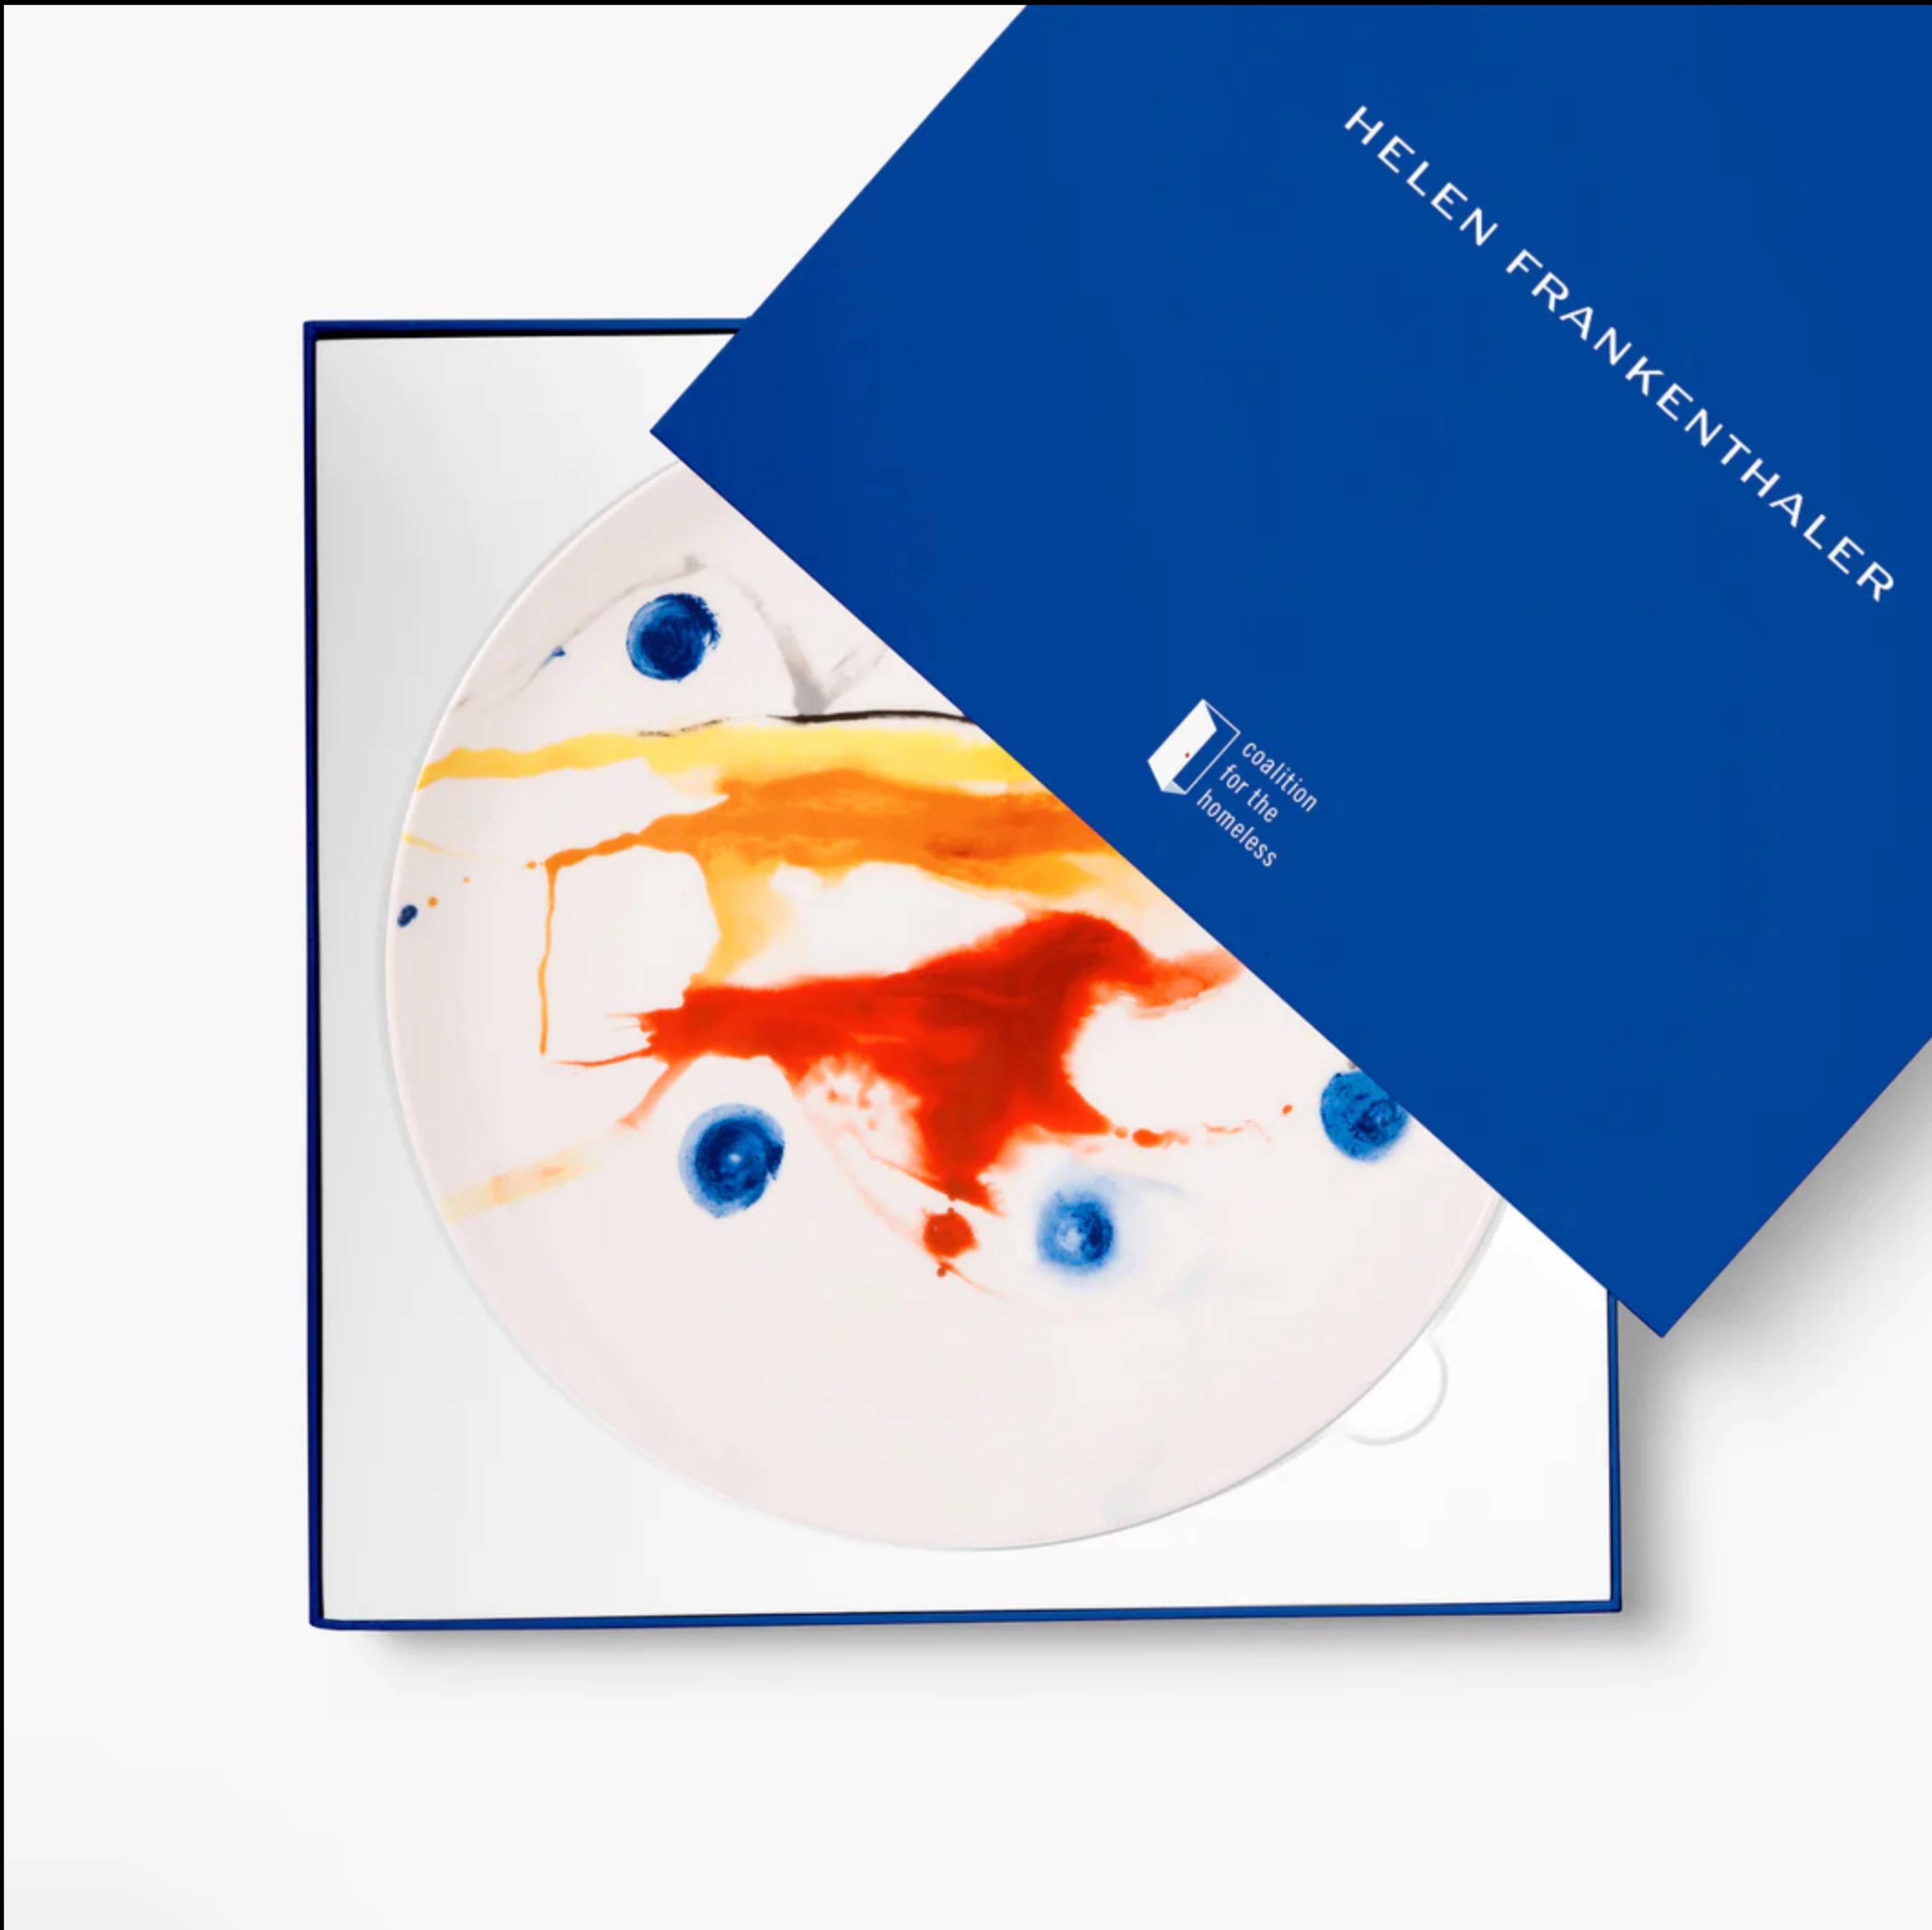 Acrobat (détail), assiette en porcelaine en édition limitée dans une boîte bleue sur mesure - abstrait - Print de Helen Frankenthaler